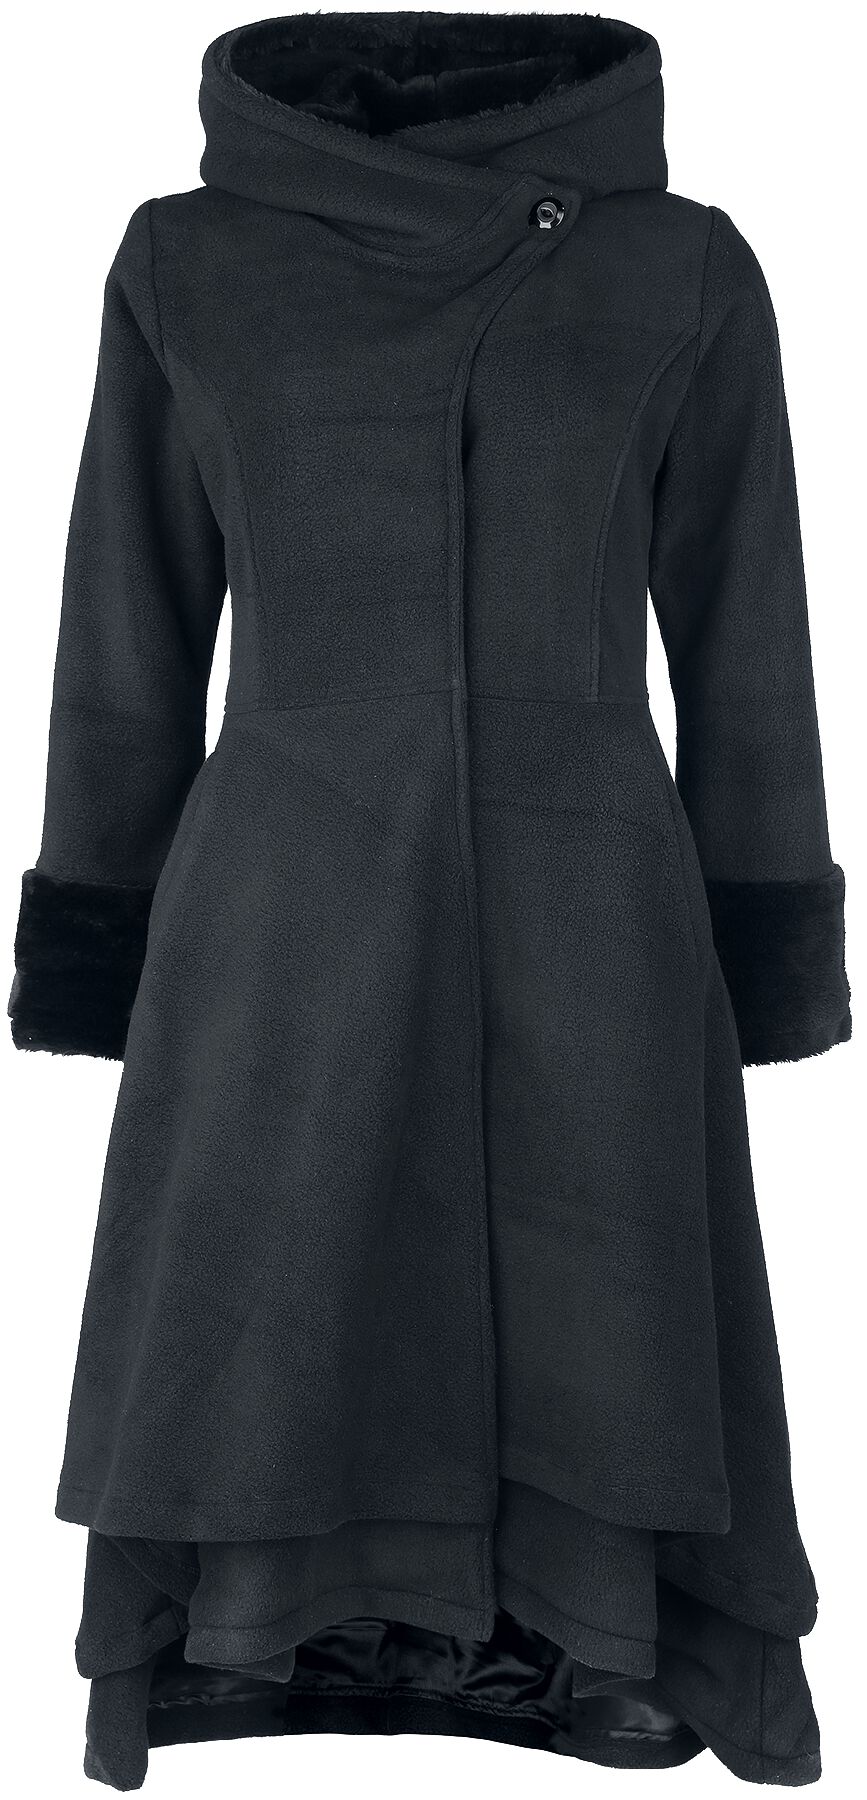 Vixxsin - Gothic Mantel - Gloaming Coat - XS bis 4XL - für Damen - Größe XXL - schwarz von Vixxsin